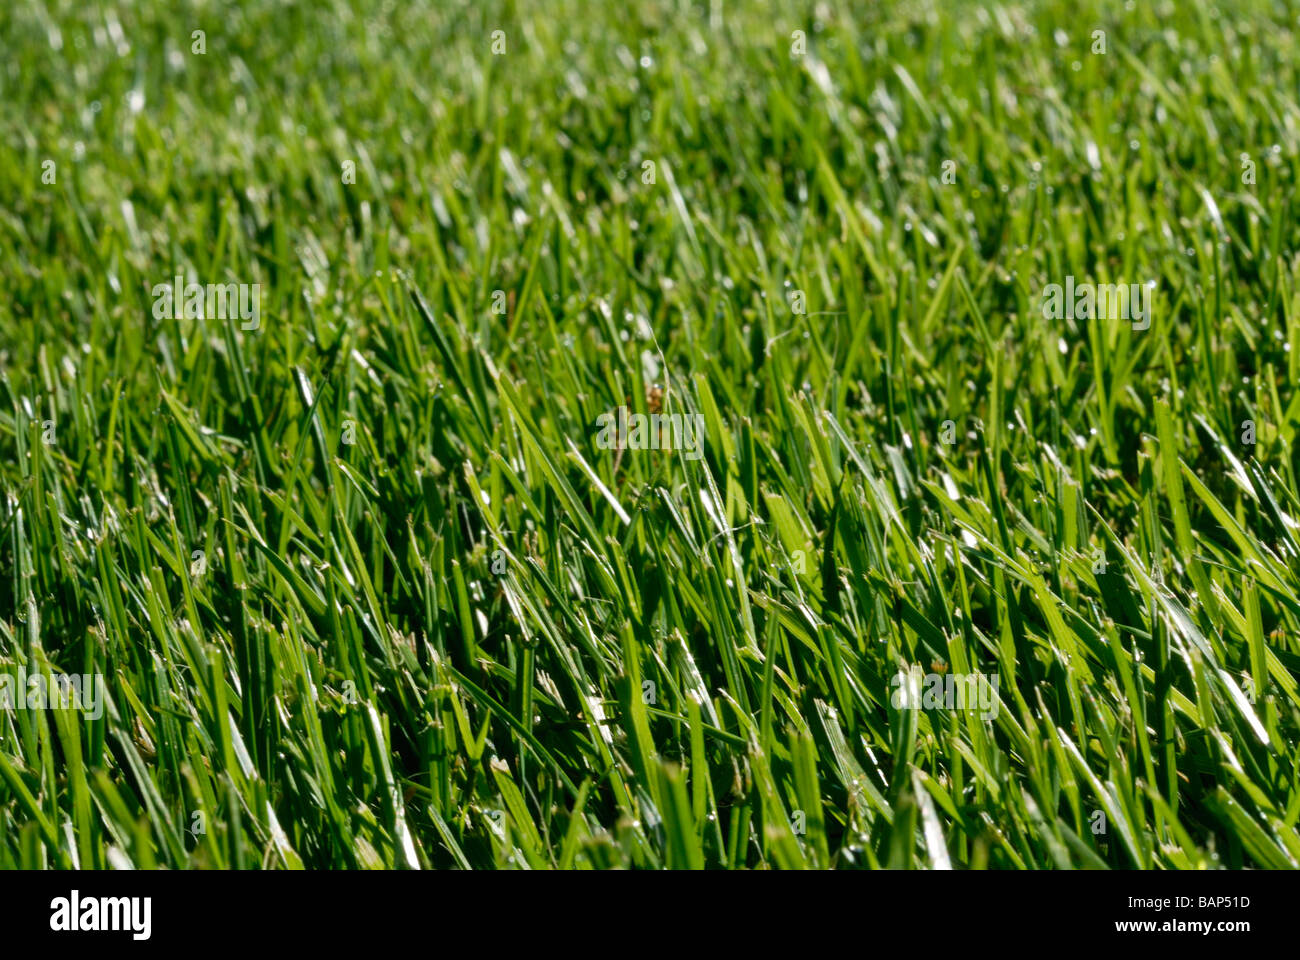 Fescue grass detail Stock Photo